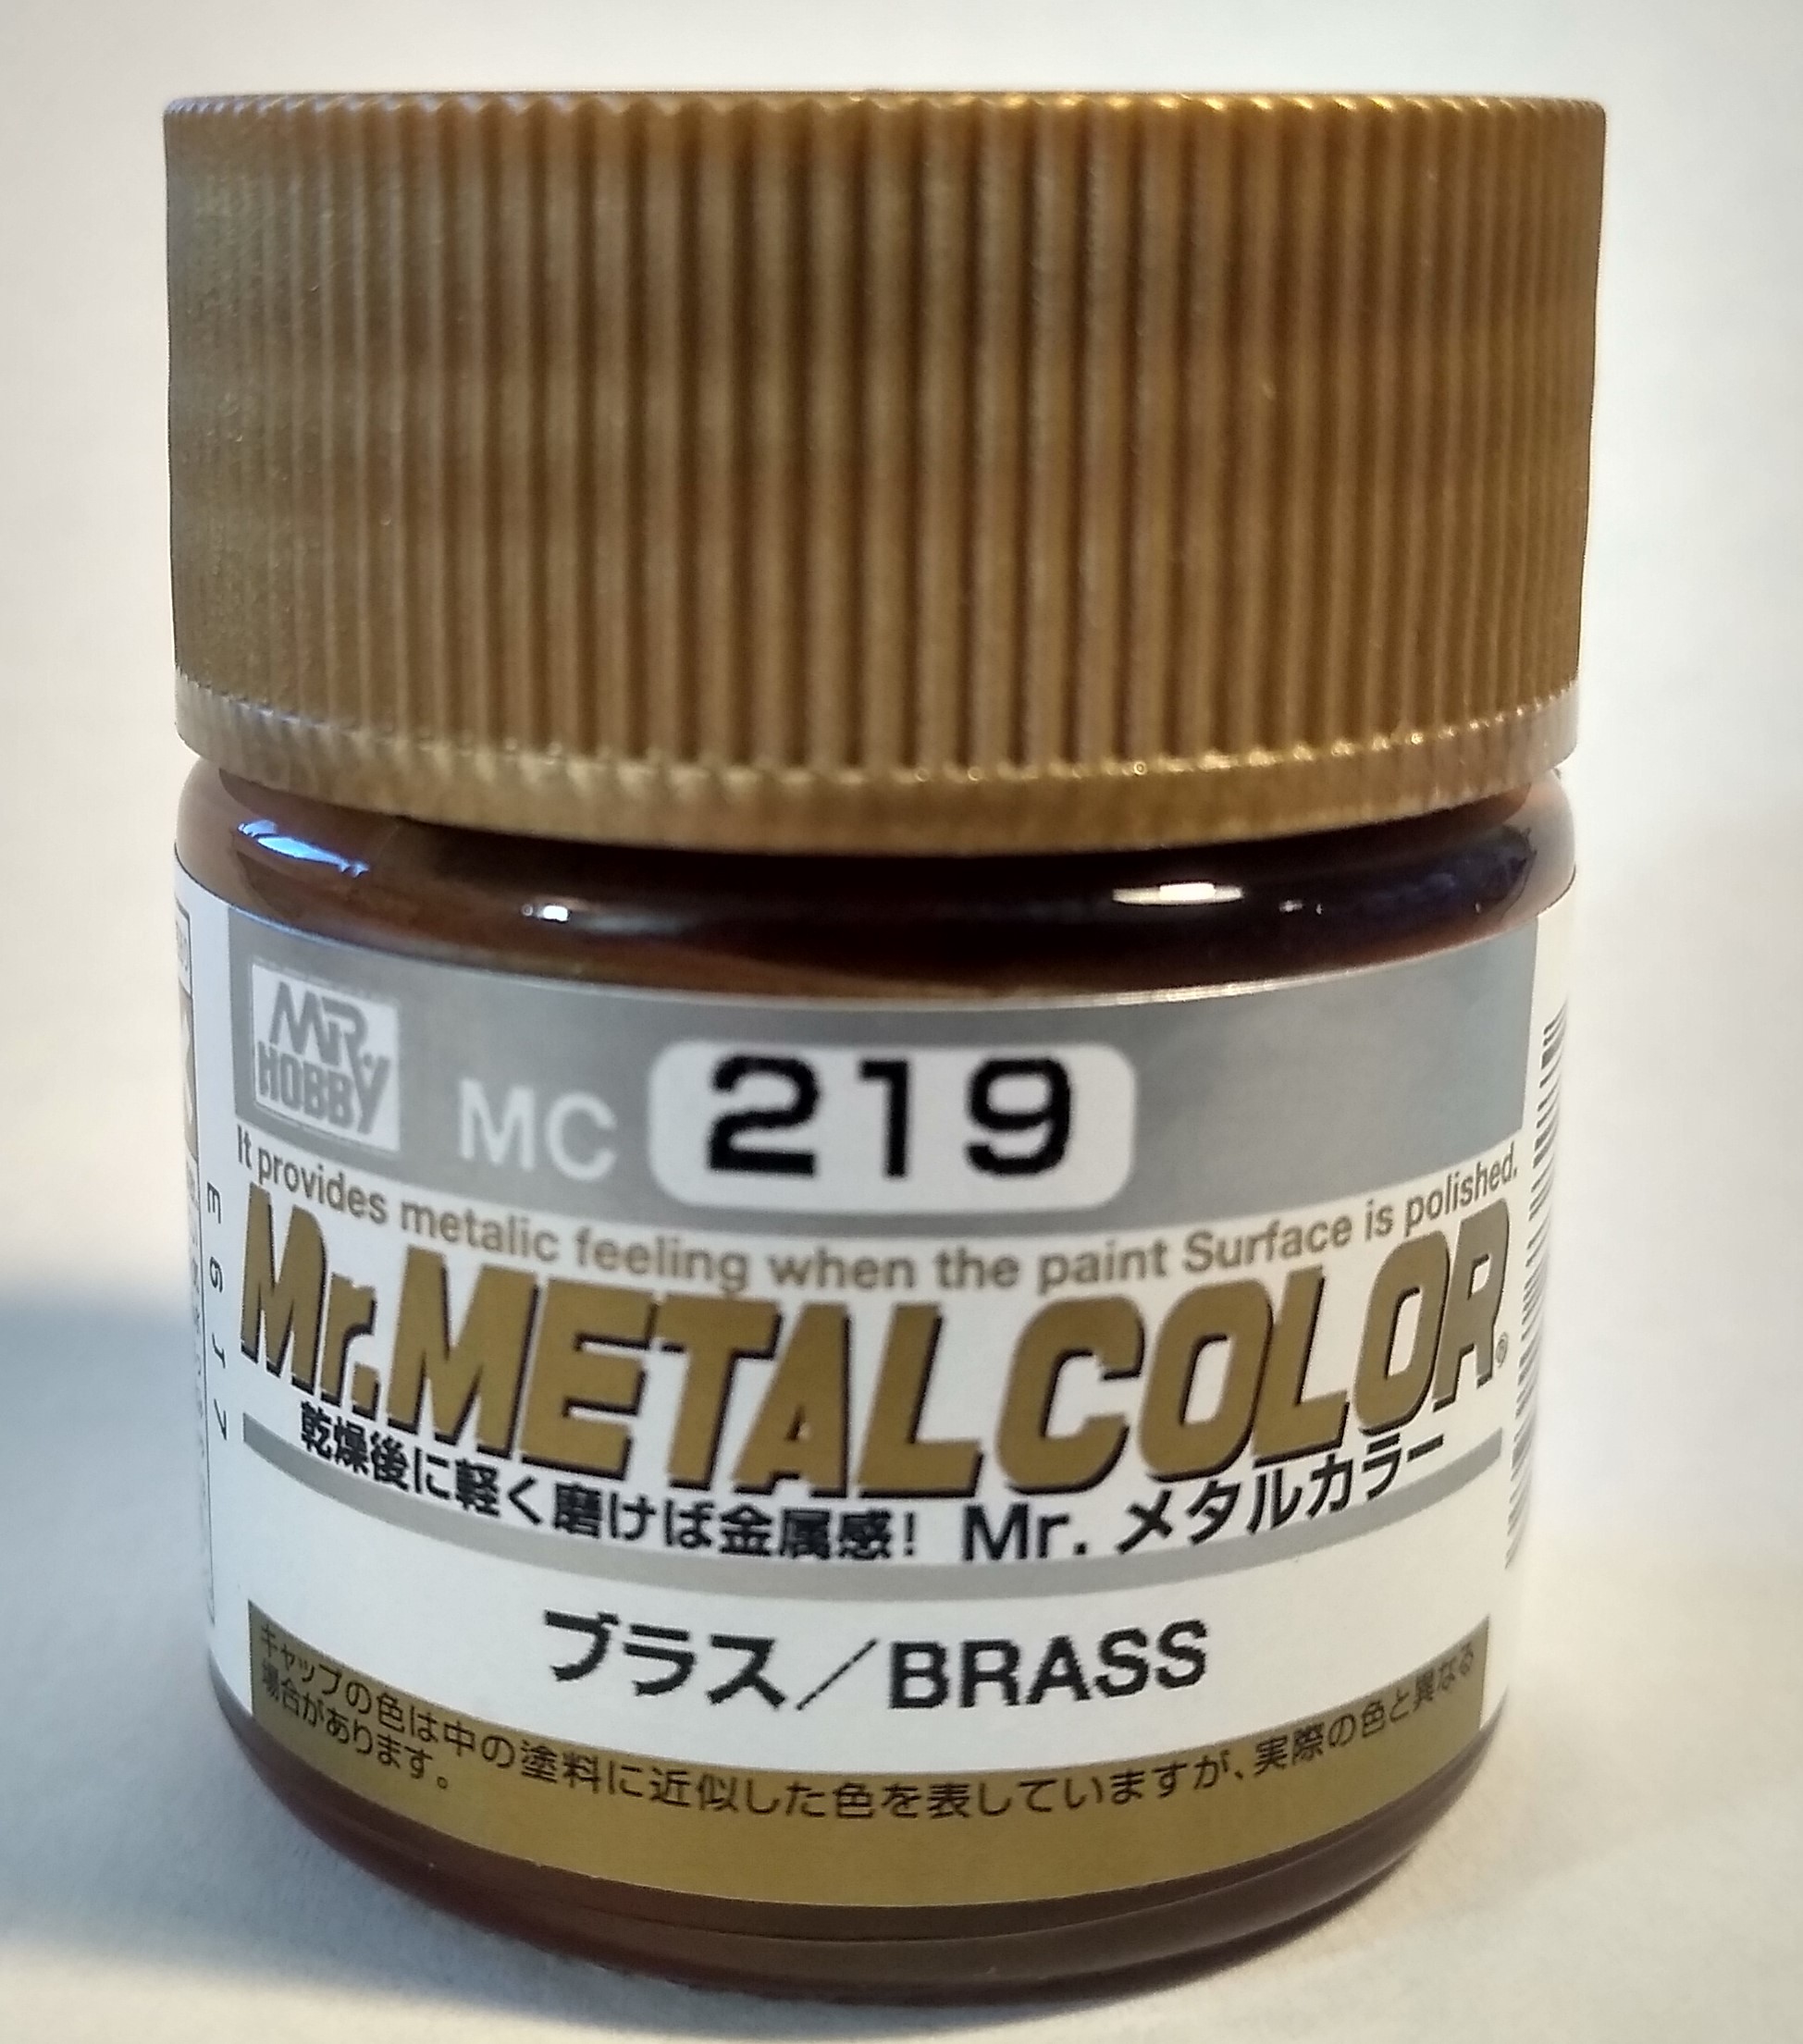 Pot of Mr. Metal Color Brass Paint